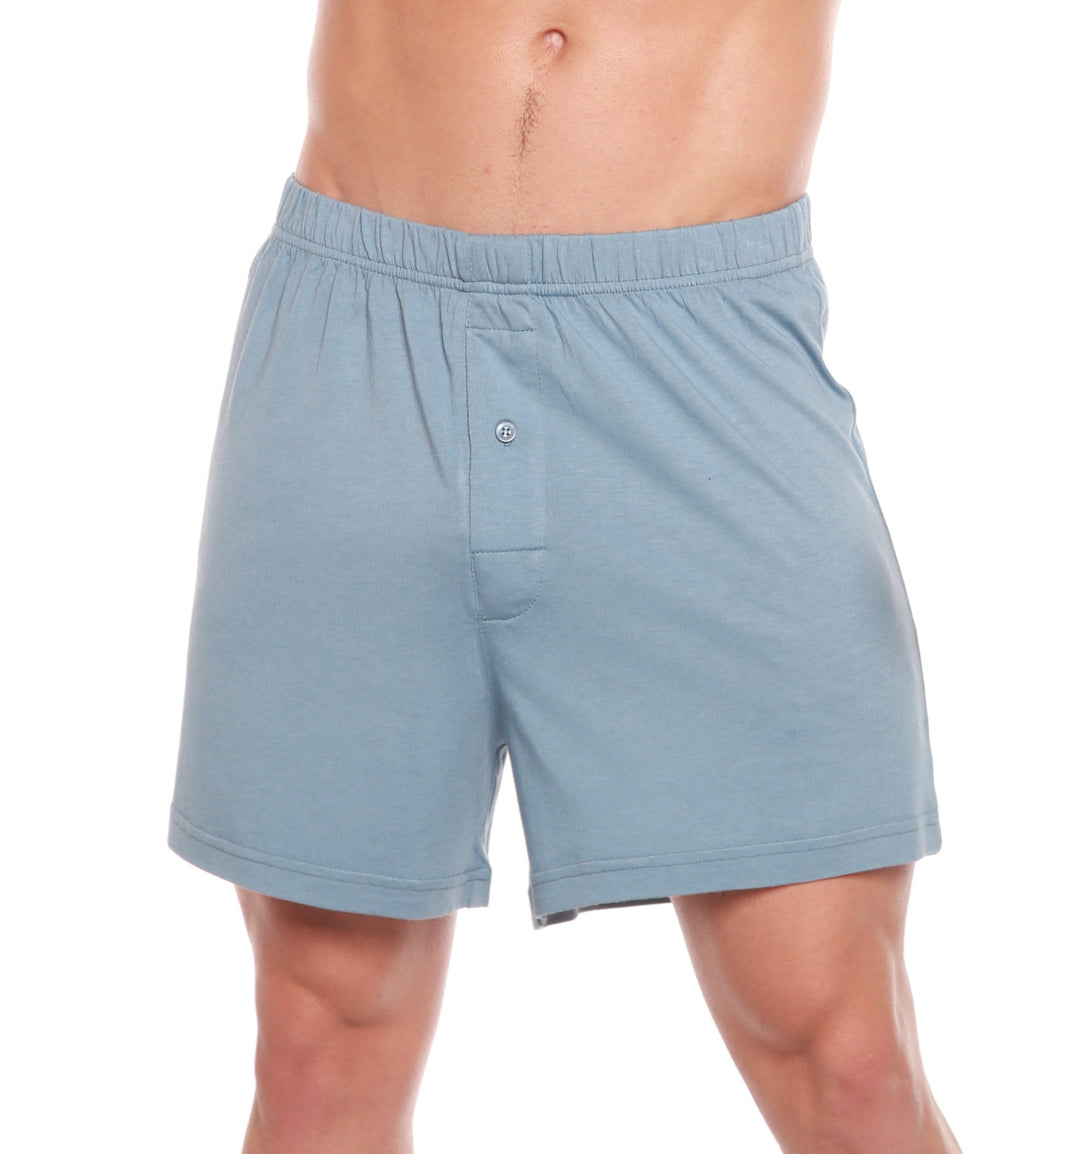 Blue jersey-knit boxers, Men's underwear